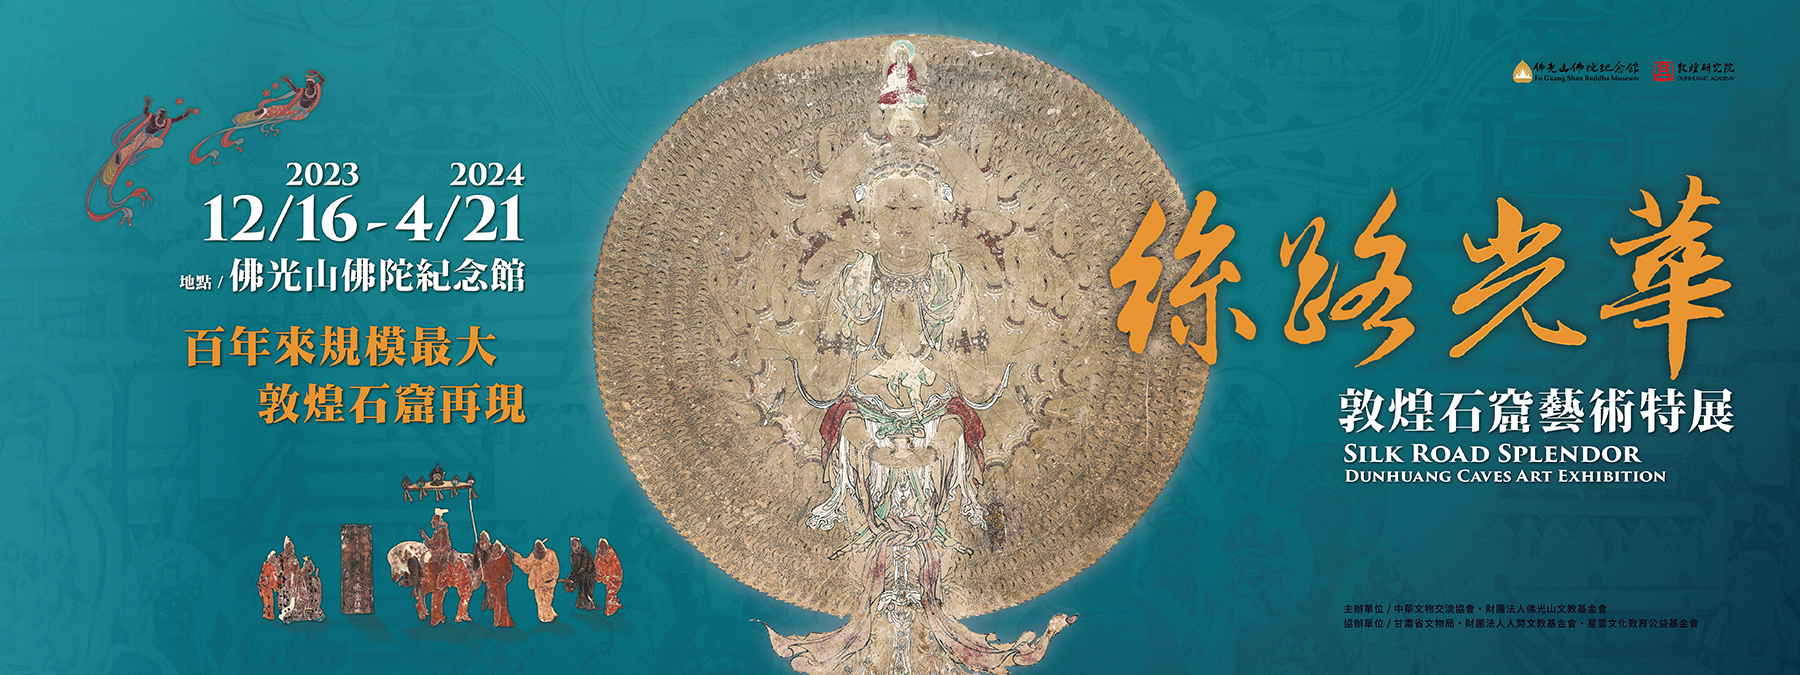 佛陀紀念館「絲路光華-敦煌石窟藝術」特展